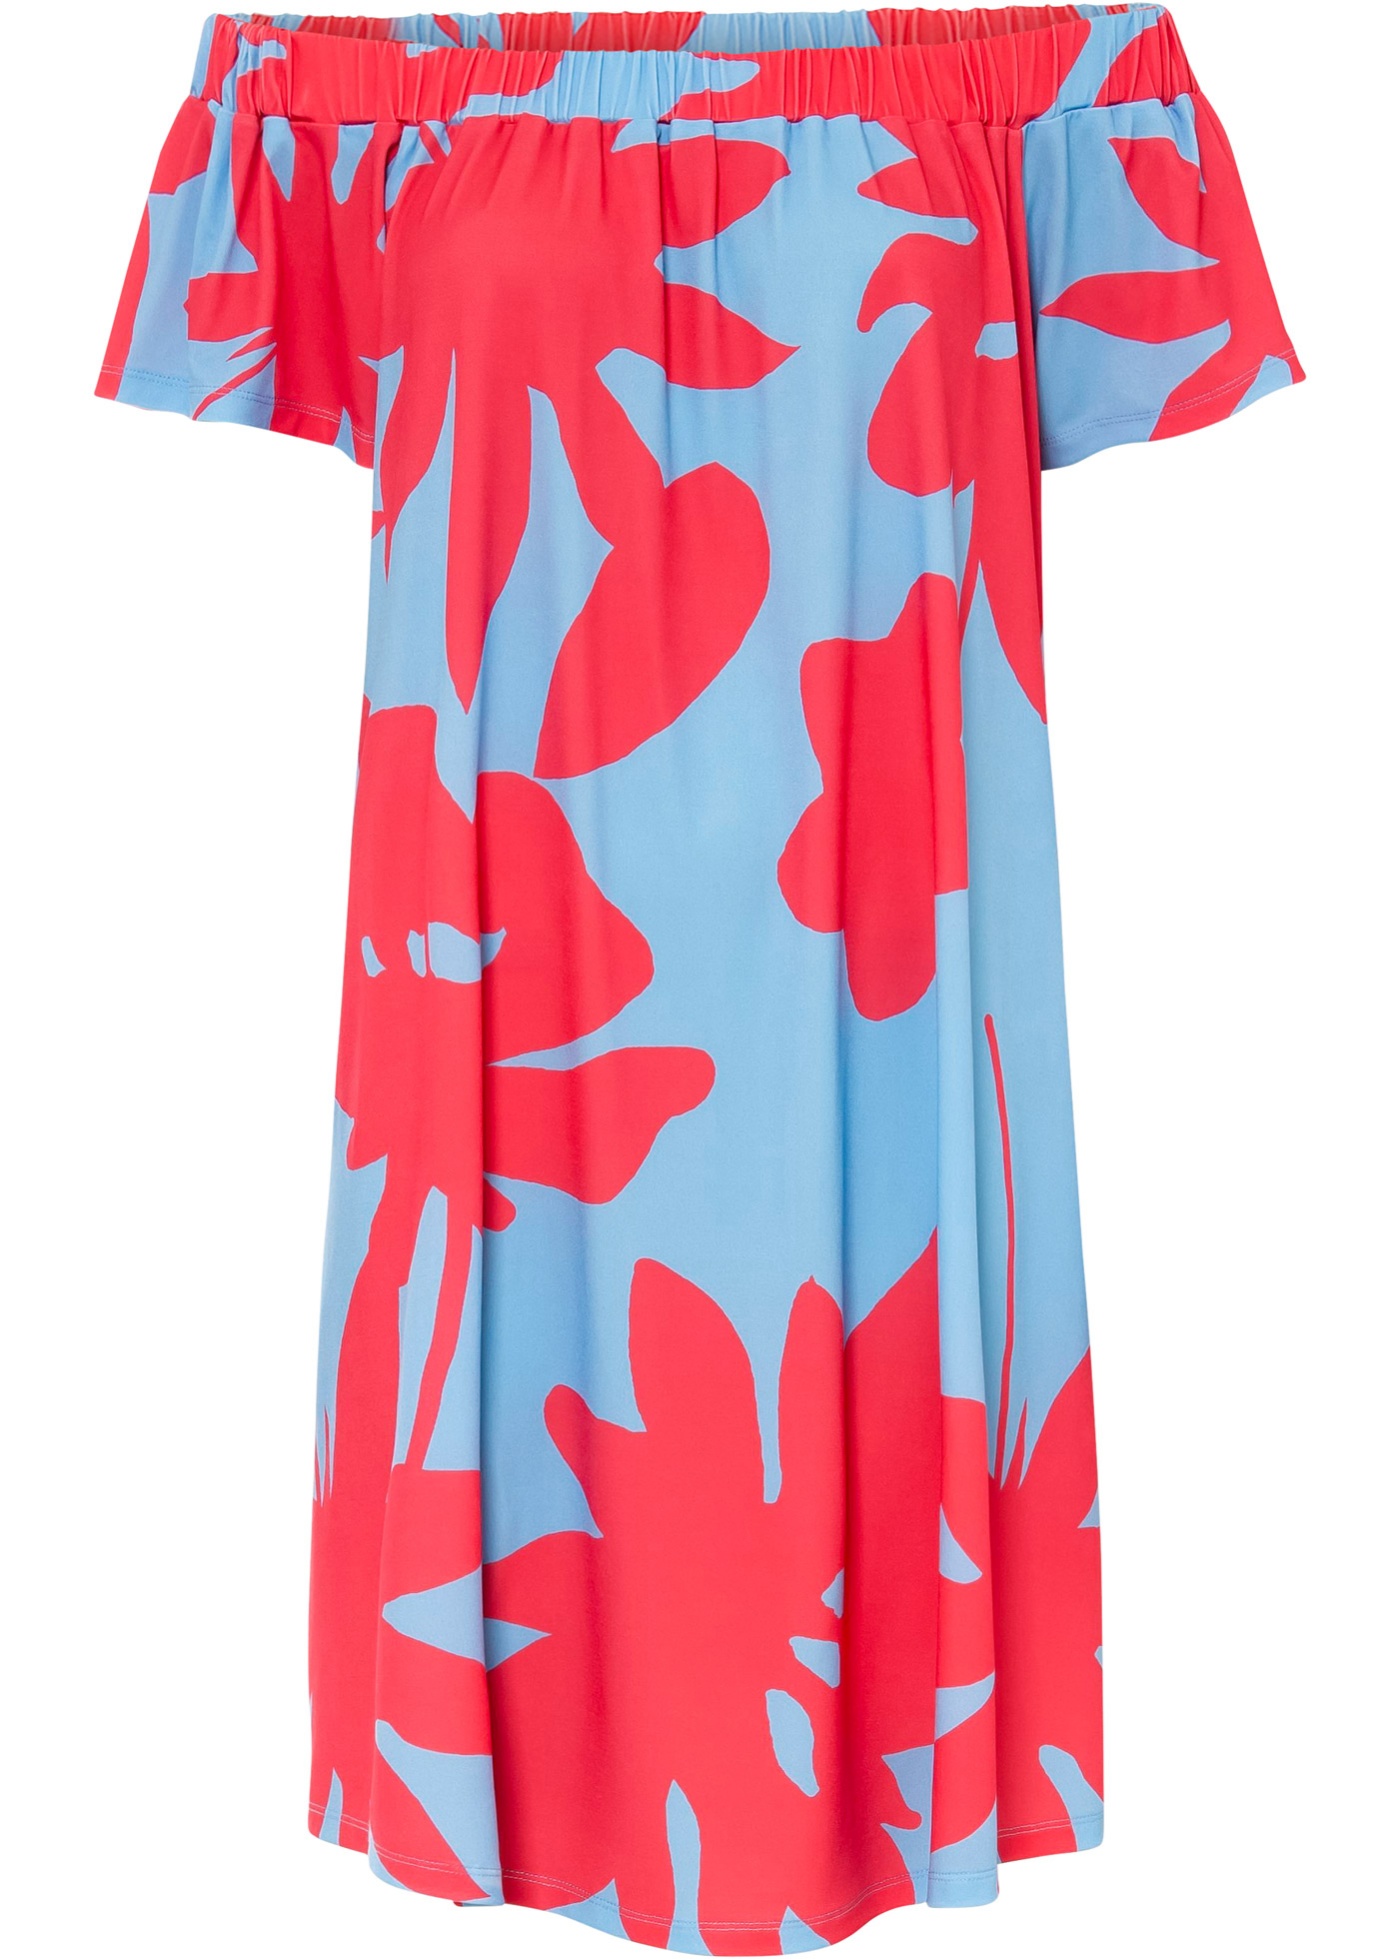 Kleid im Oversize Look mit schönem Print (92434581) in hellblau / pink floral